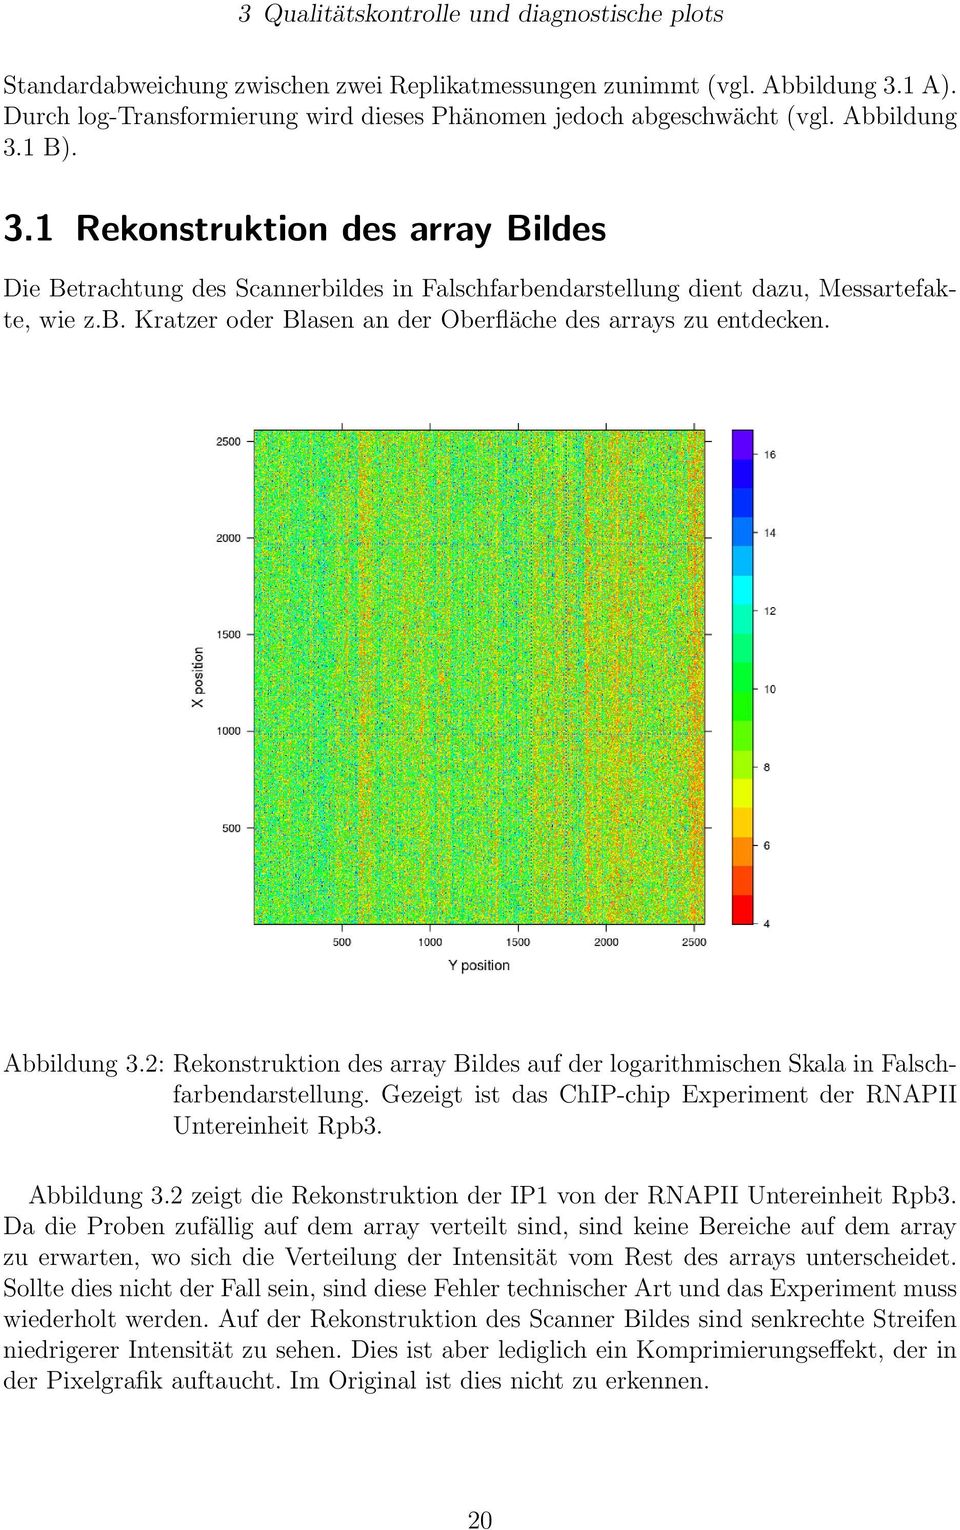 Abbildung 3.2: Rekonstruktion des array Bildes auf der logarithmischen Skala in Falschfarbendarstellung. Gezeigt ist das ChIP-chip Experiment der RNAPII Untereinheit Rpb3. Abbildung 3.